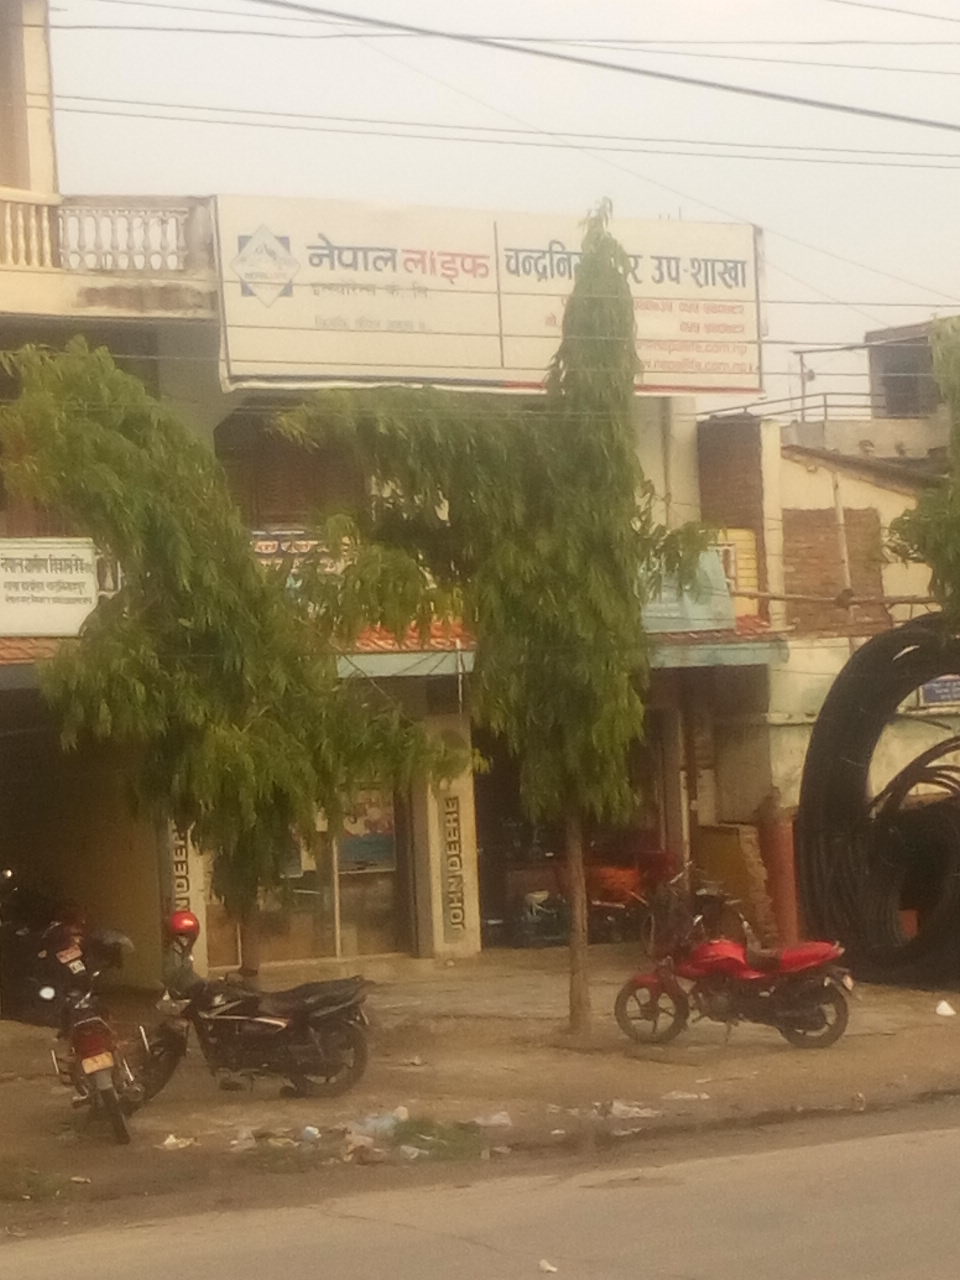 Nepal Life Insurance Company